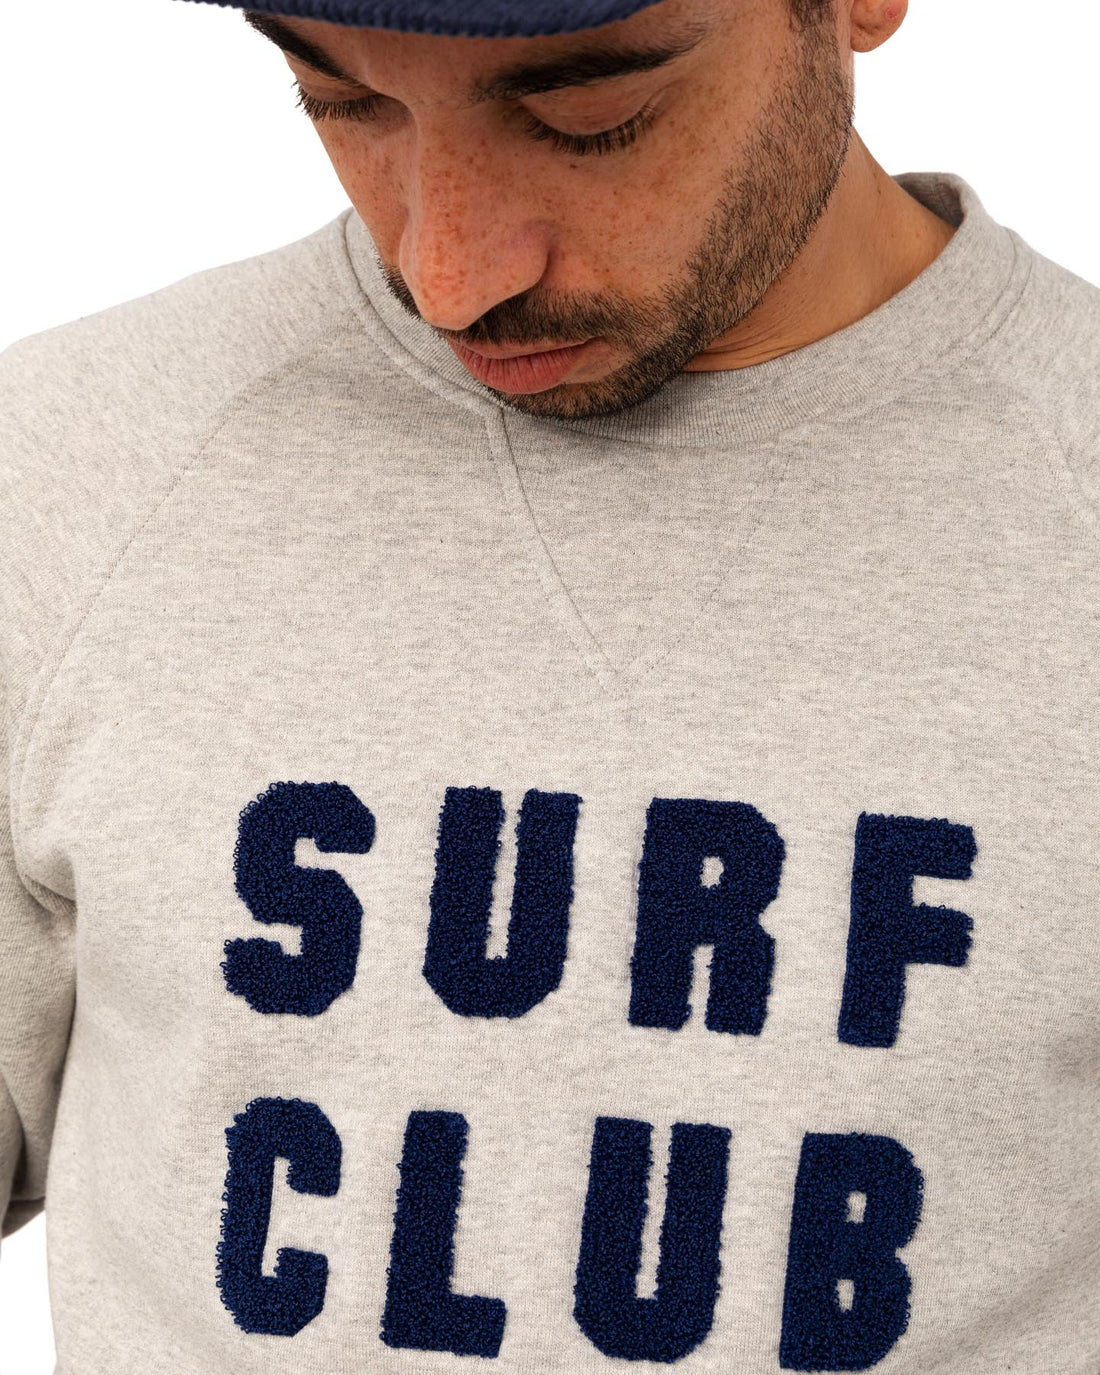 Surf Club Edition | Grey